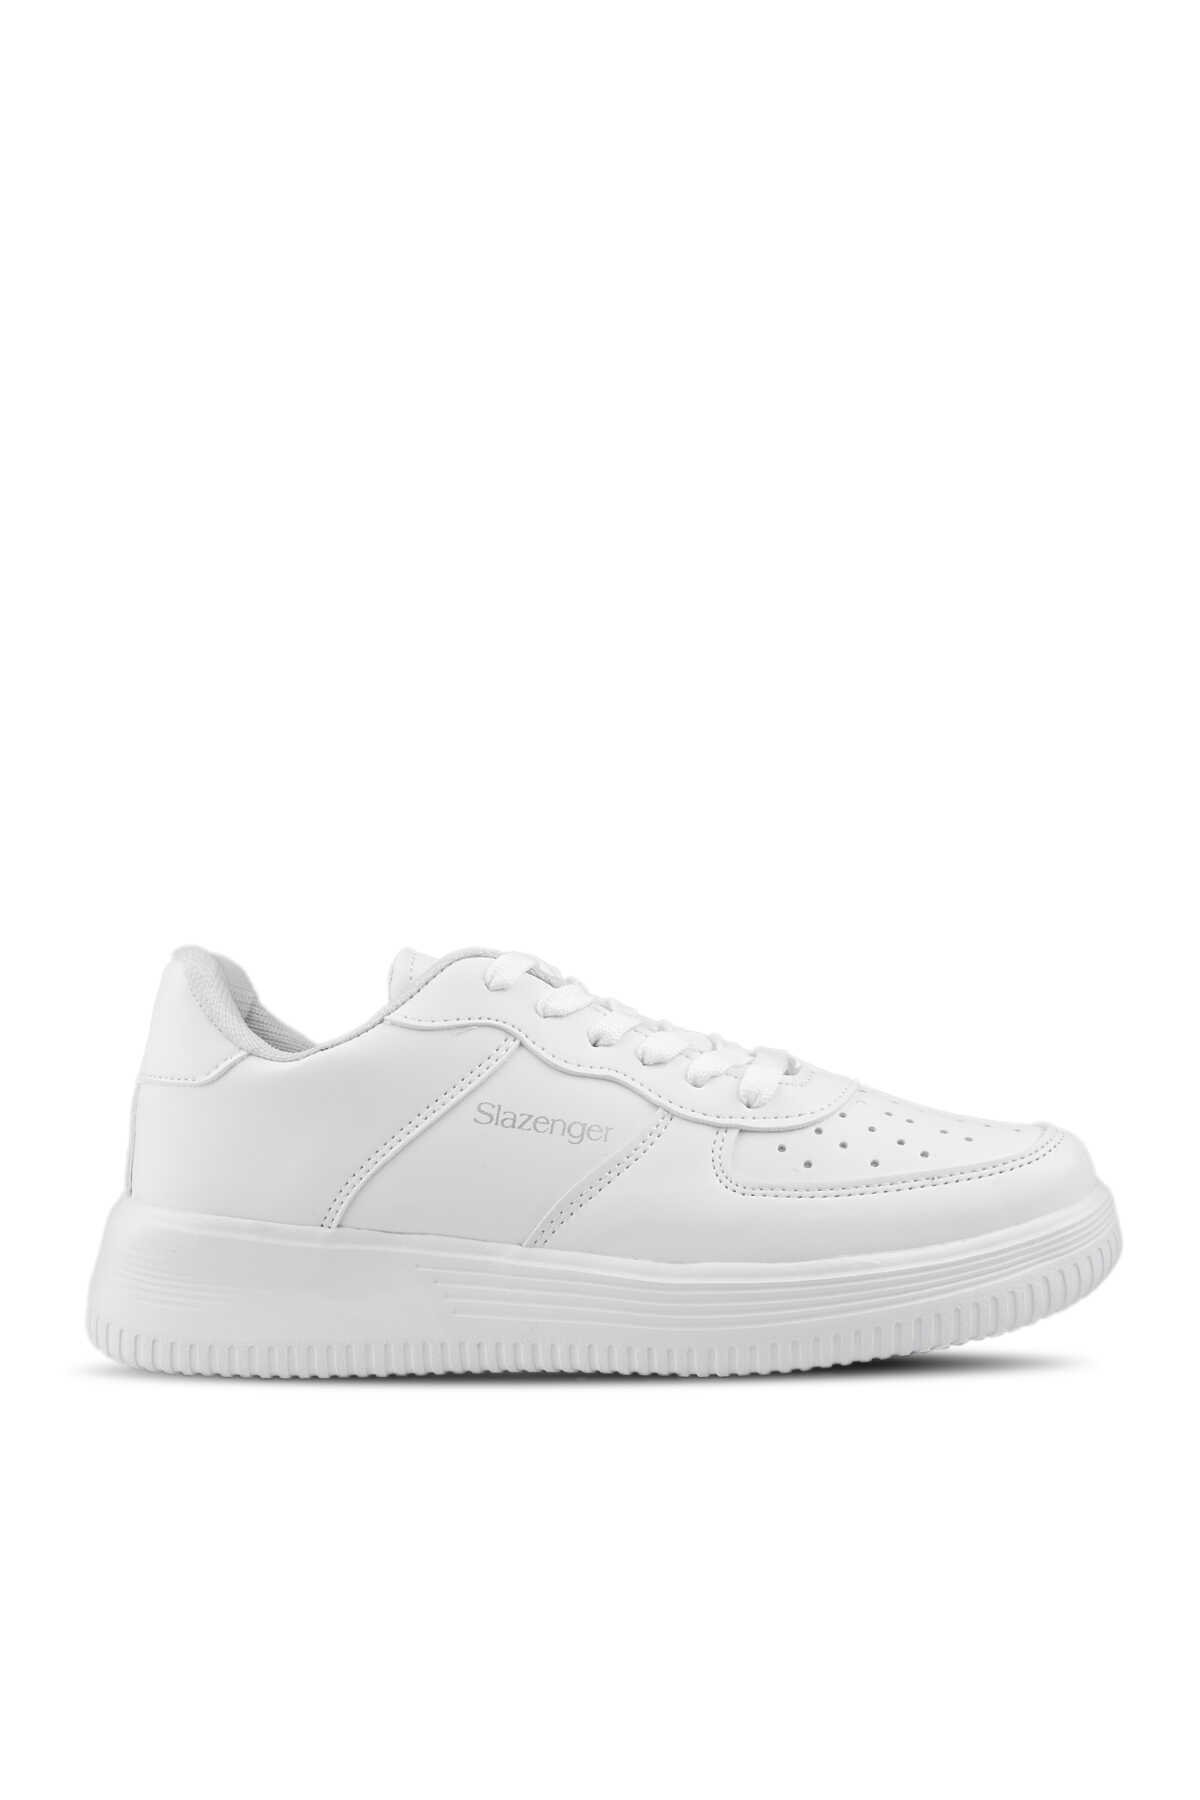 Slazenger - Slazenger EKUA Sneaker Kadın Ayakkabı Beyaz